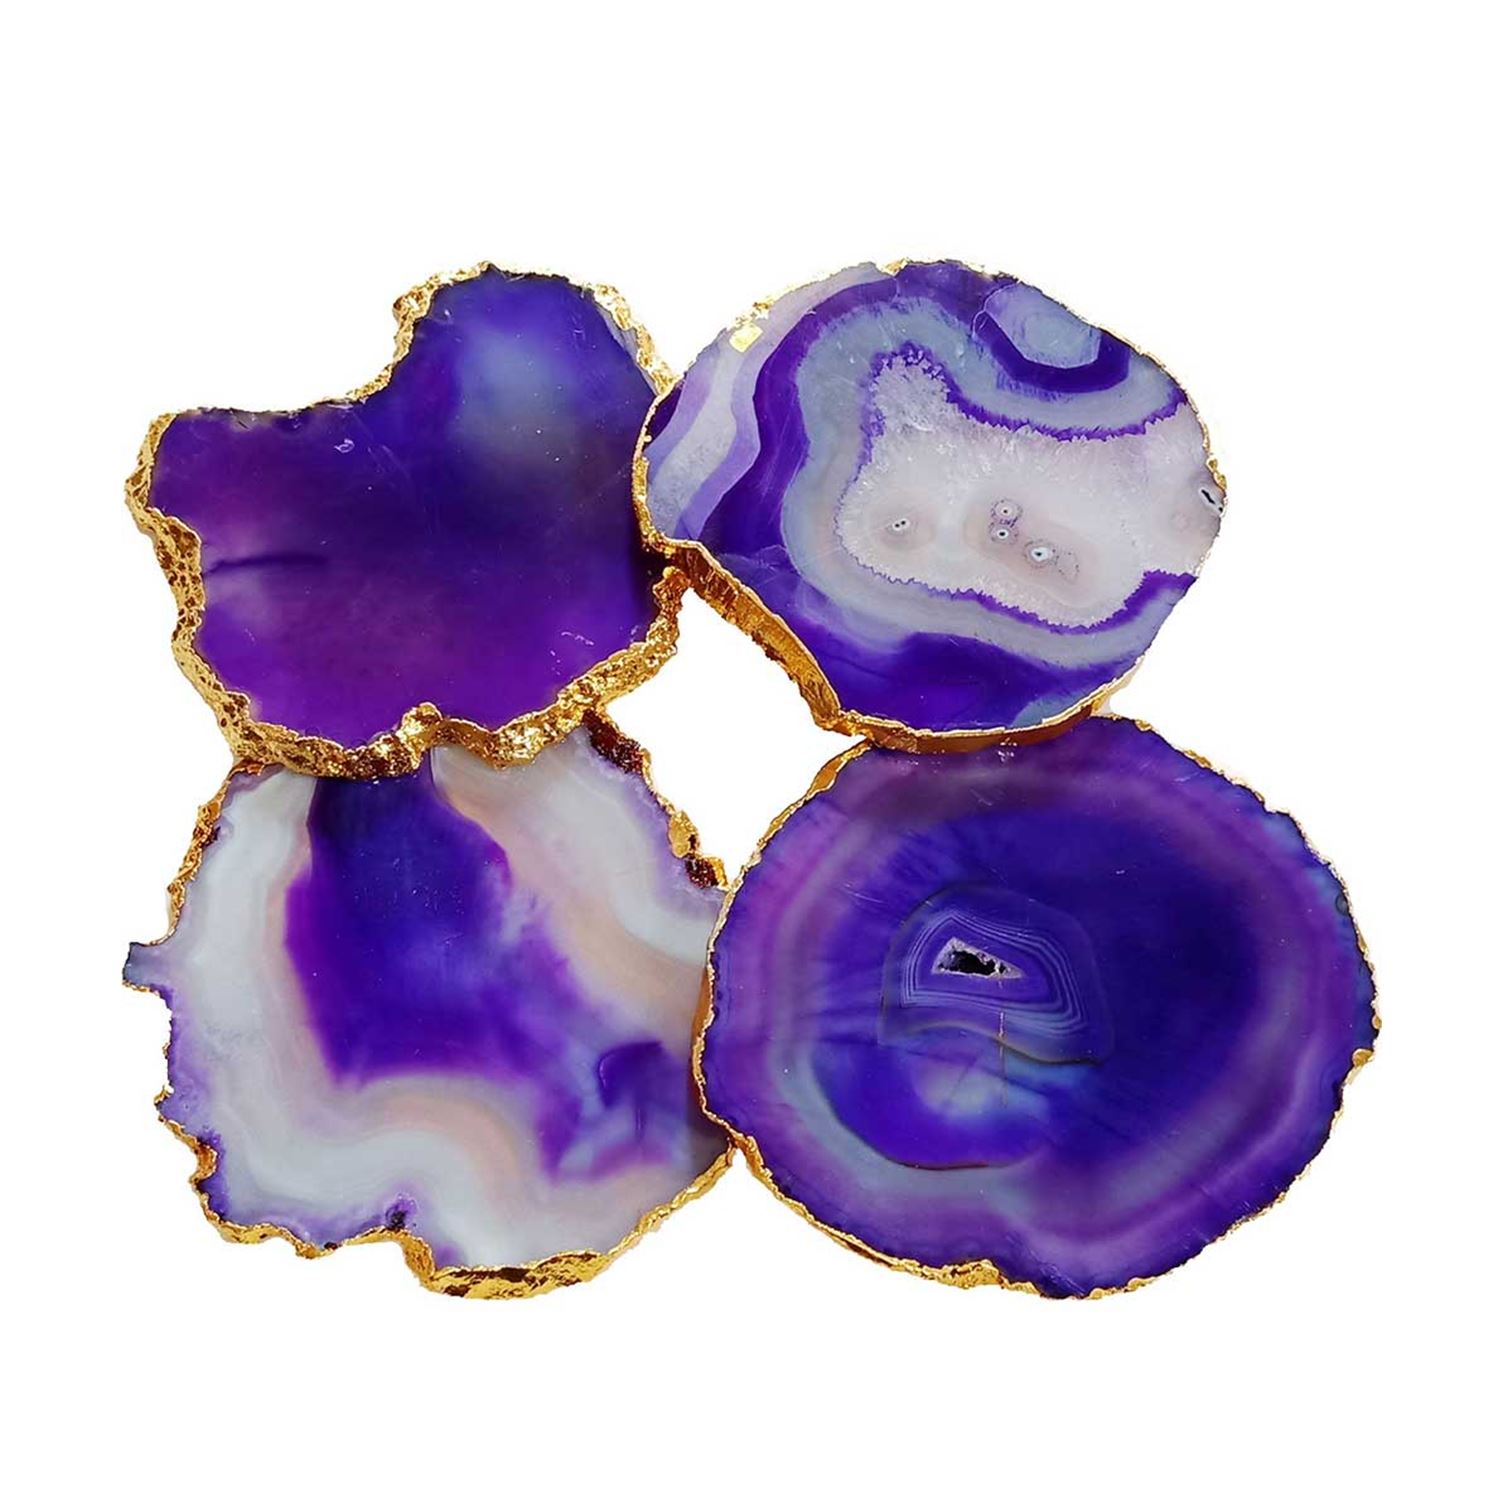 agate-coasters-slices-purple